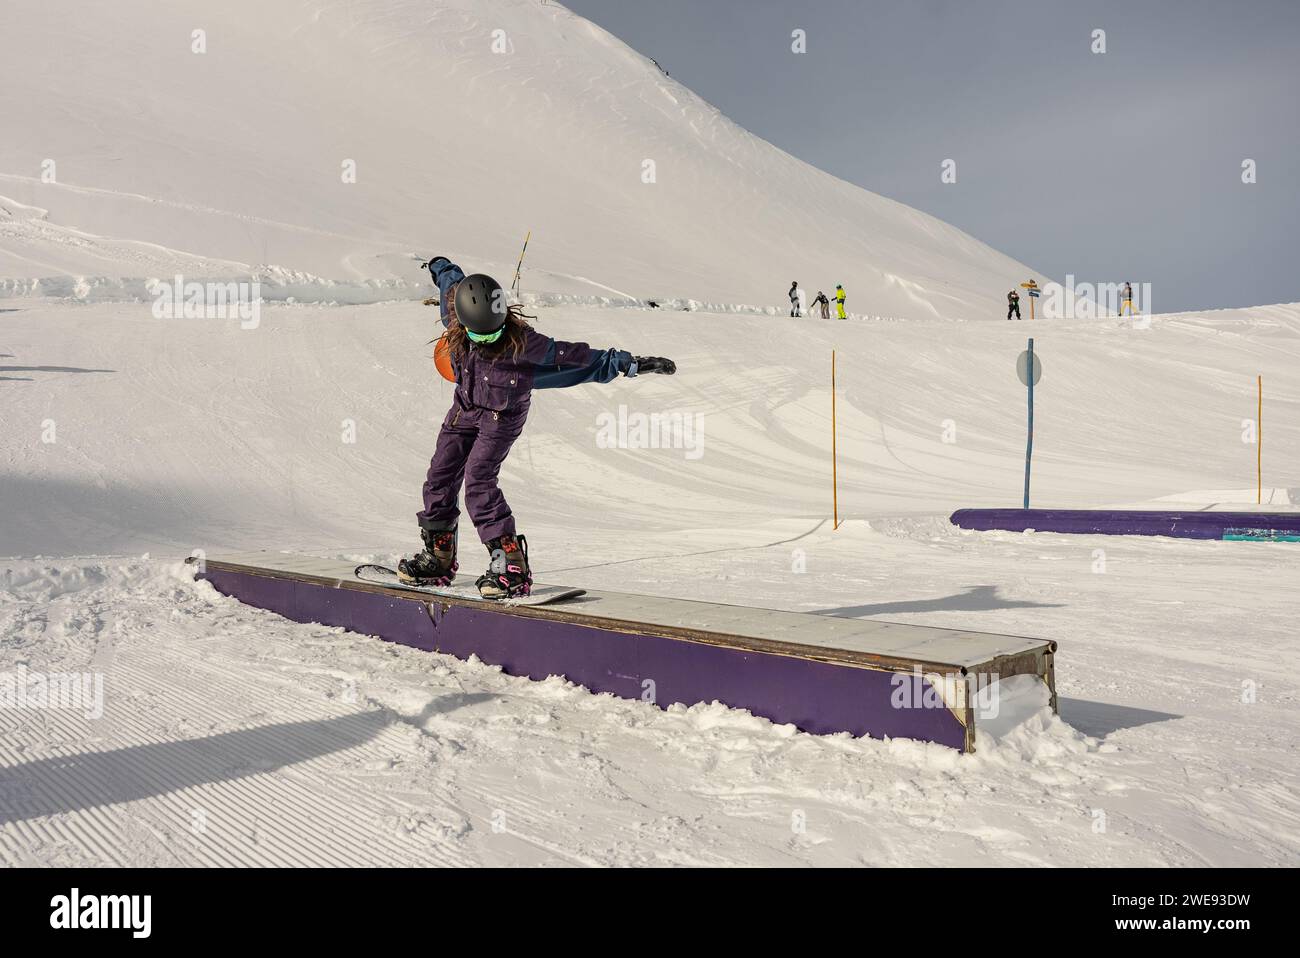 Trucchi per lo Snow Park. Snowboarder nel parco su una scatola. Jibbing invernale nello snwopark in Francia.. Foto Stock